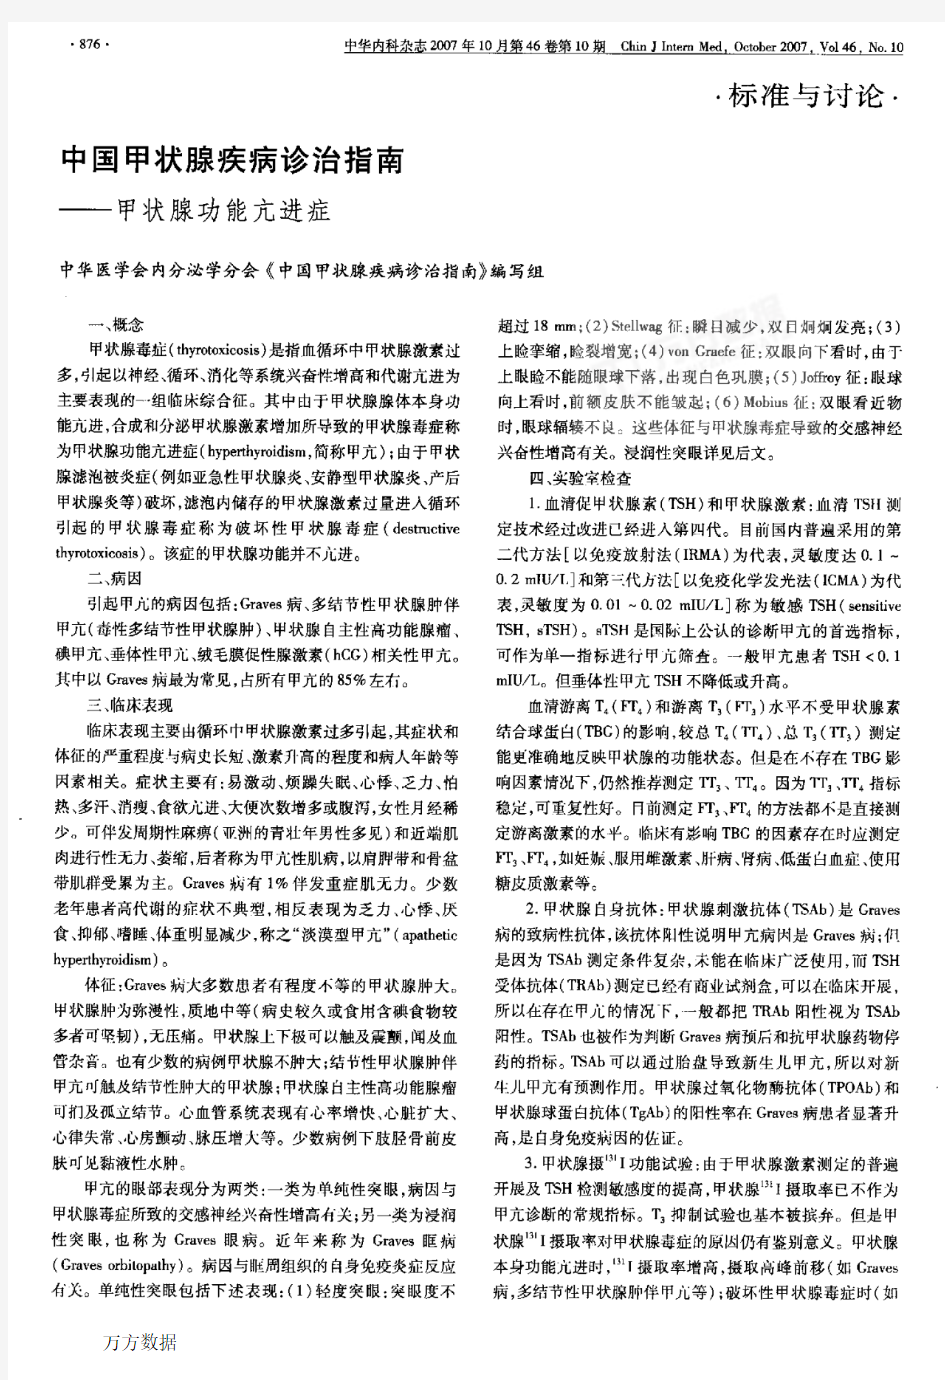 中国甲状腺疾病诊治指南——甲状腺功能亢进症